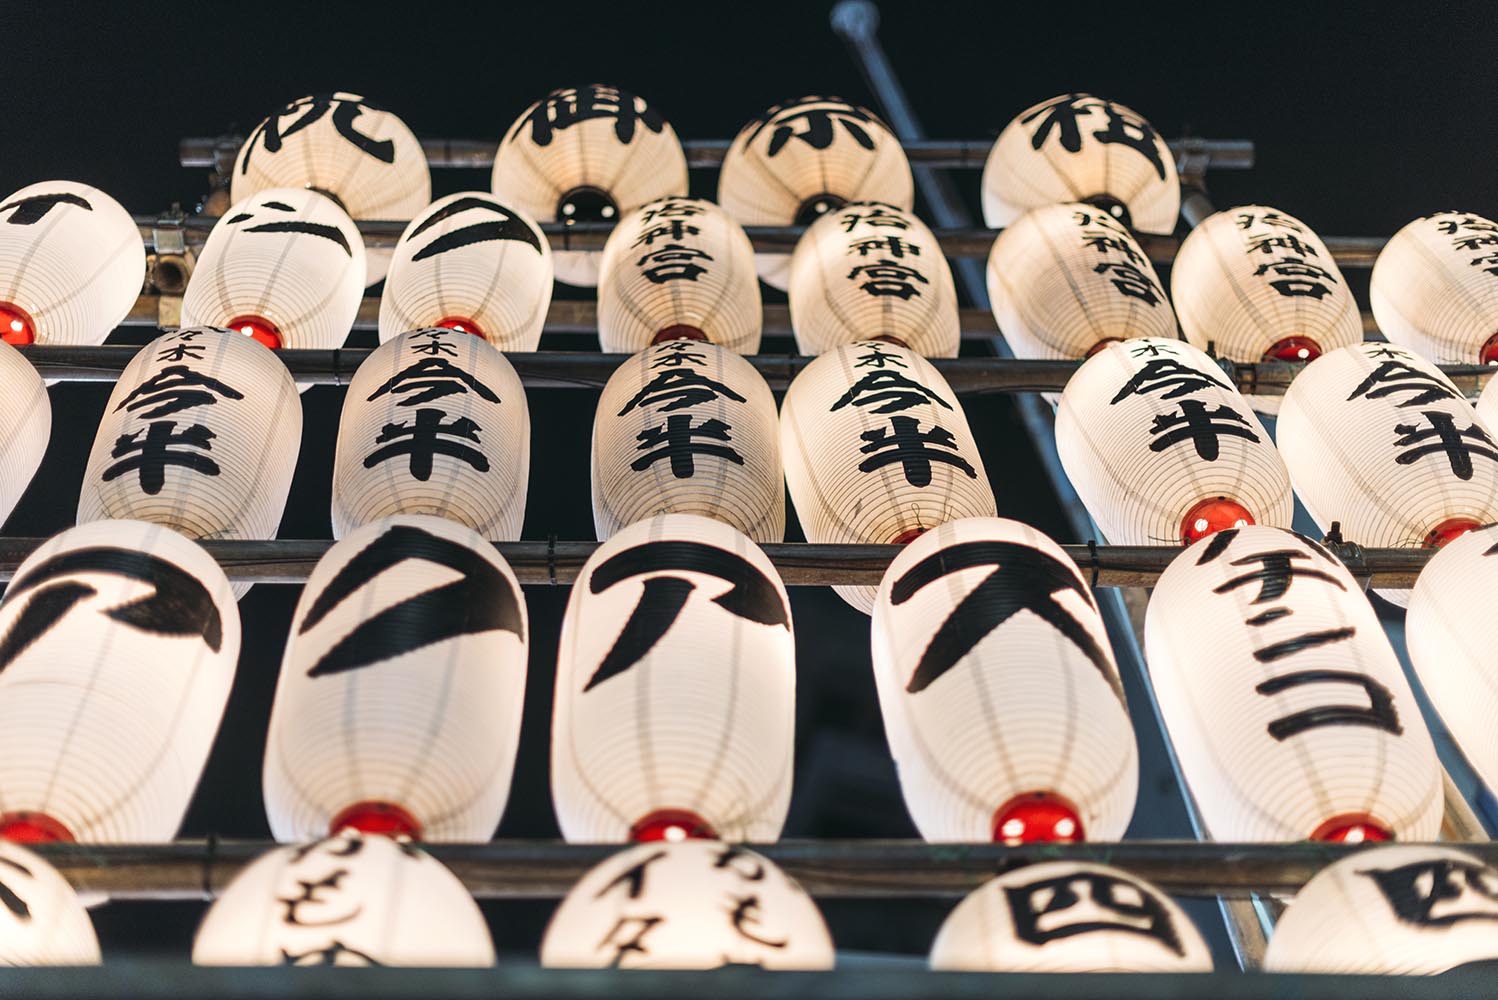 Lampions at Asakusa Shrine. Tokyo, Japan